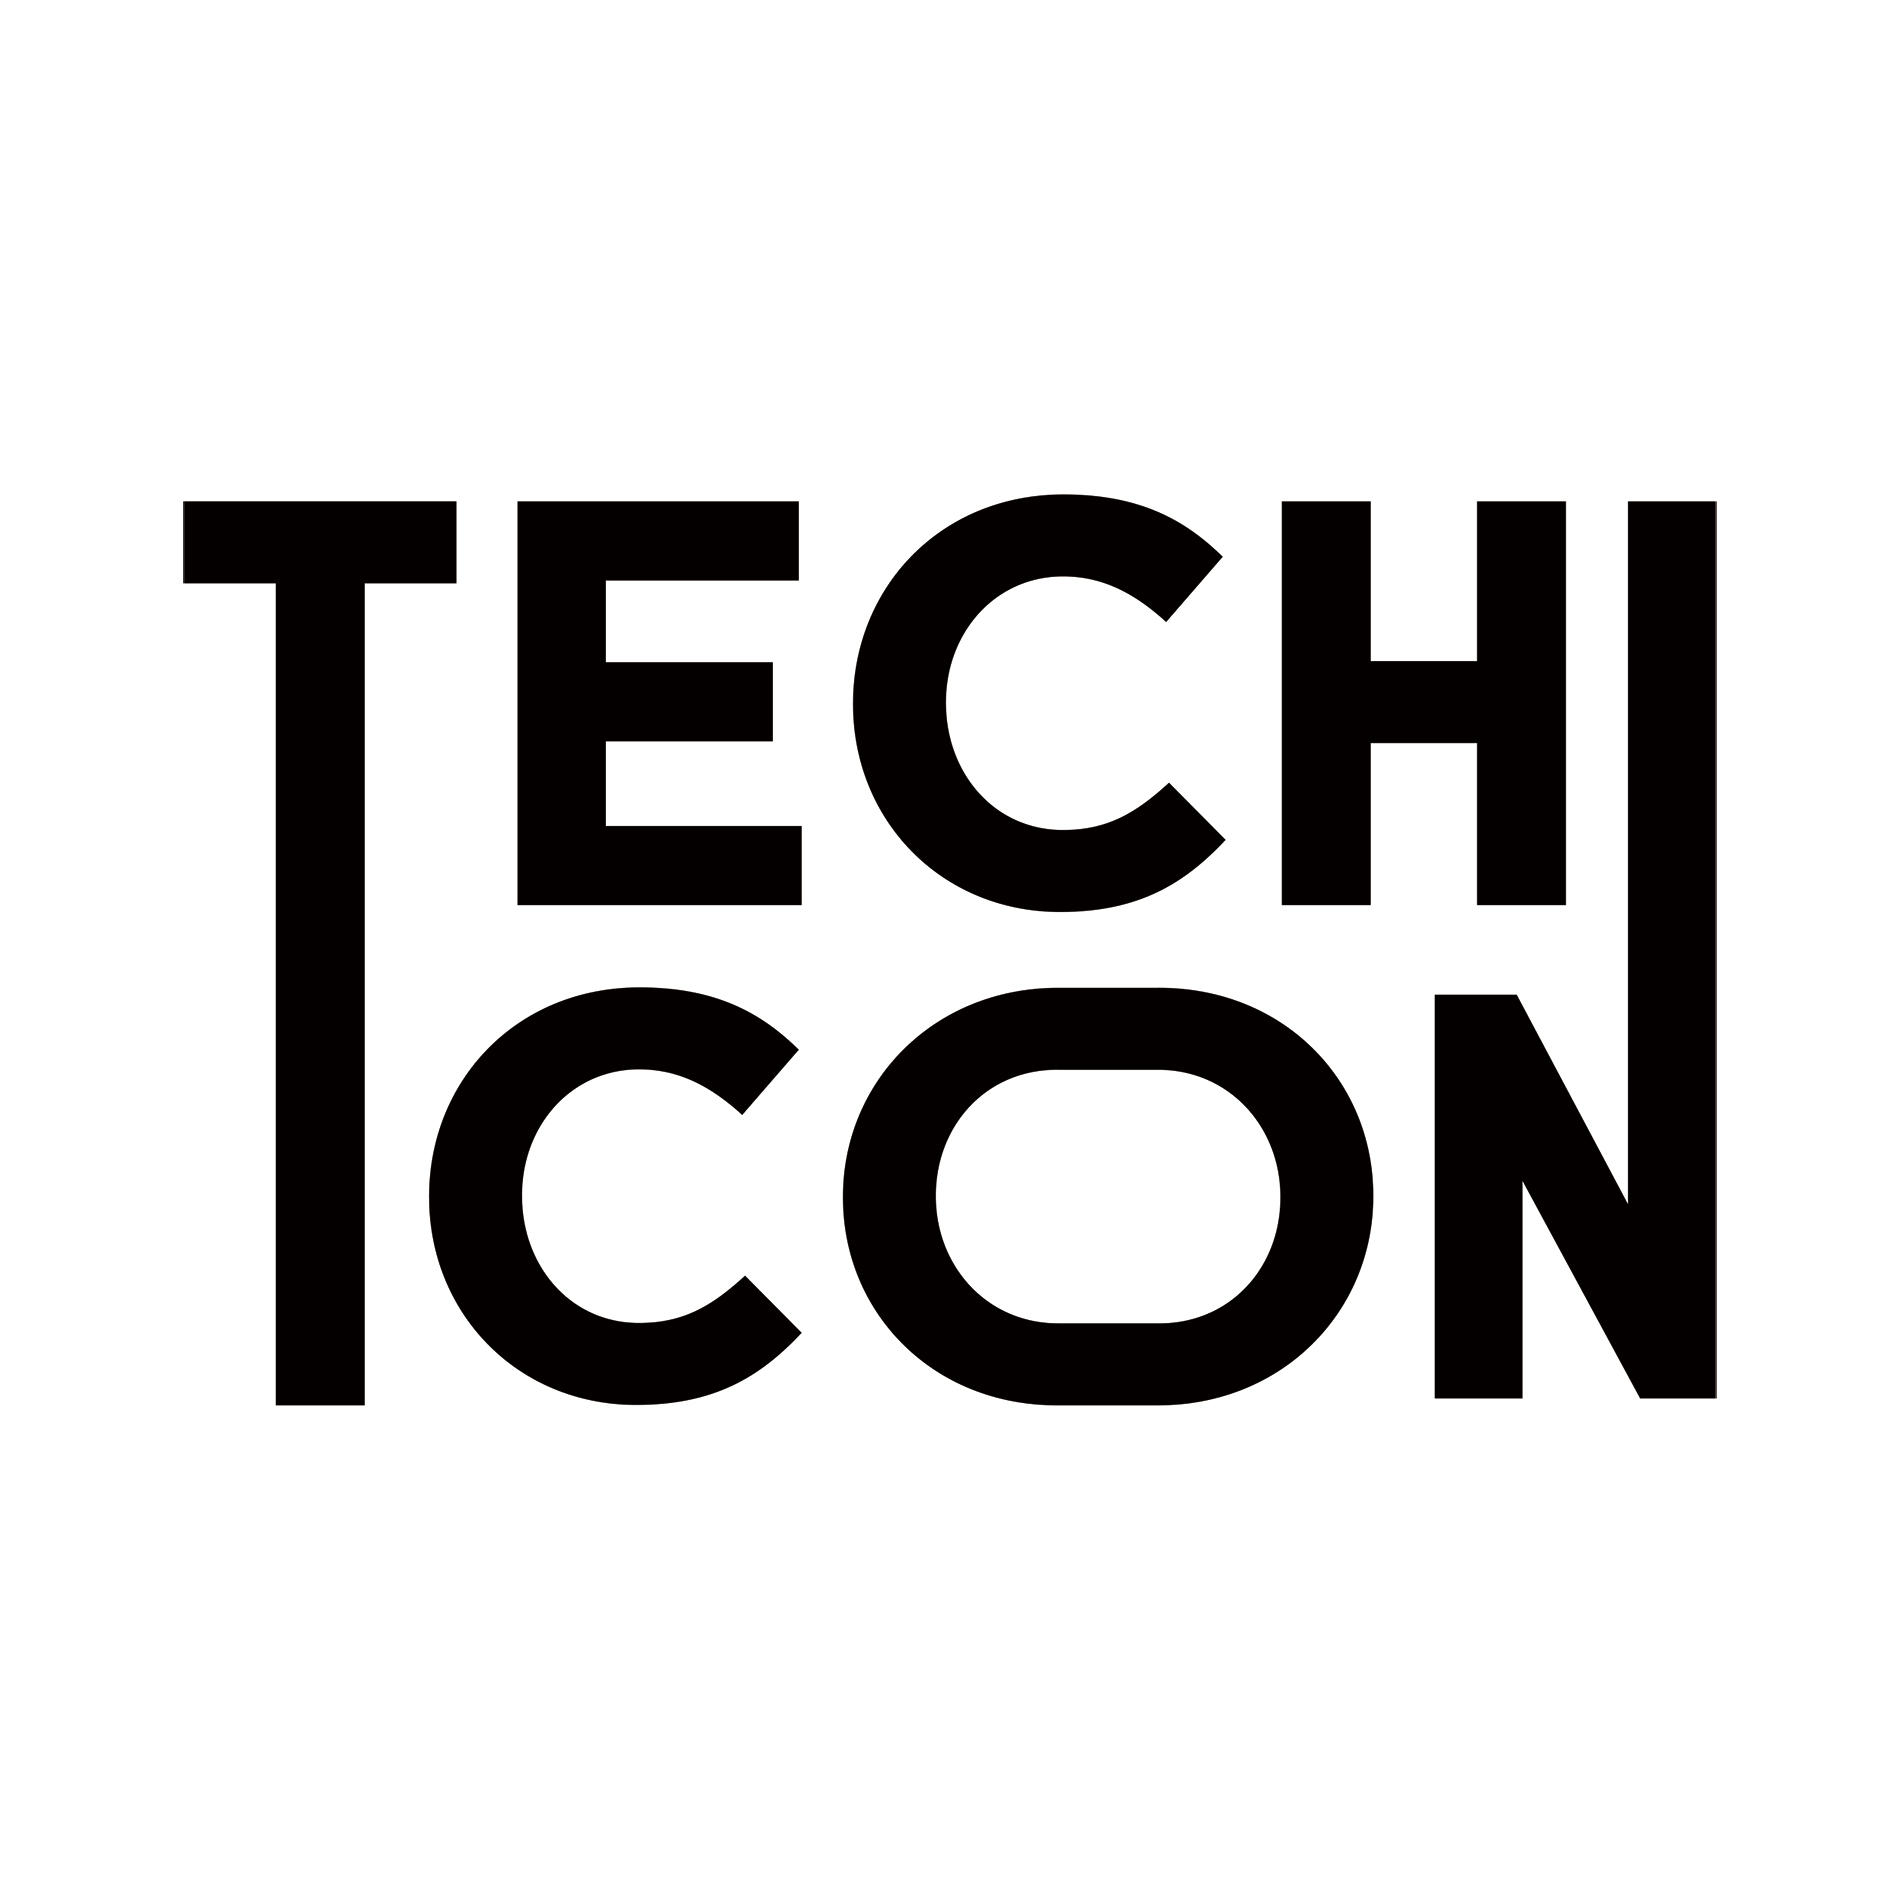 オンライン開催で視聴者1.8倍に。エンジニア向けイベント「DeNA TechCon」の成功の鍵